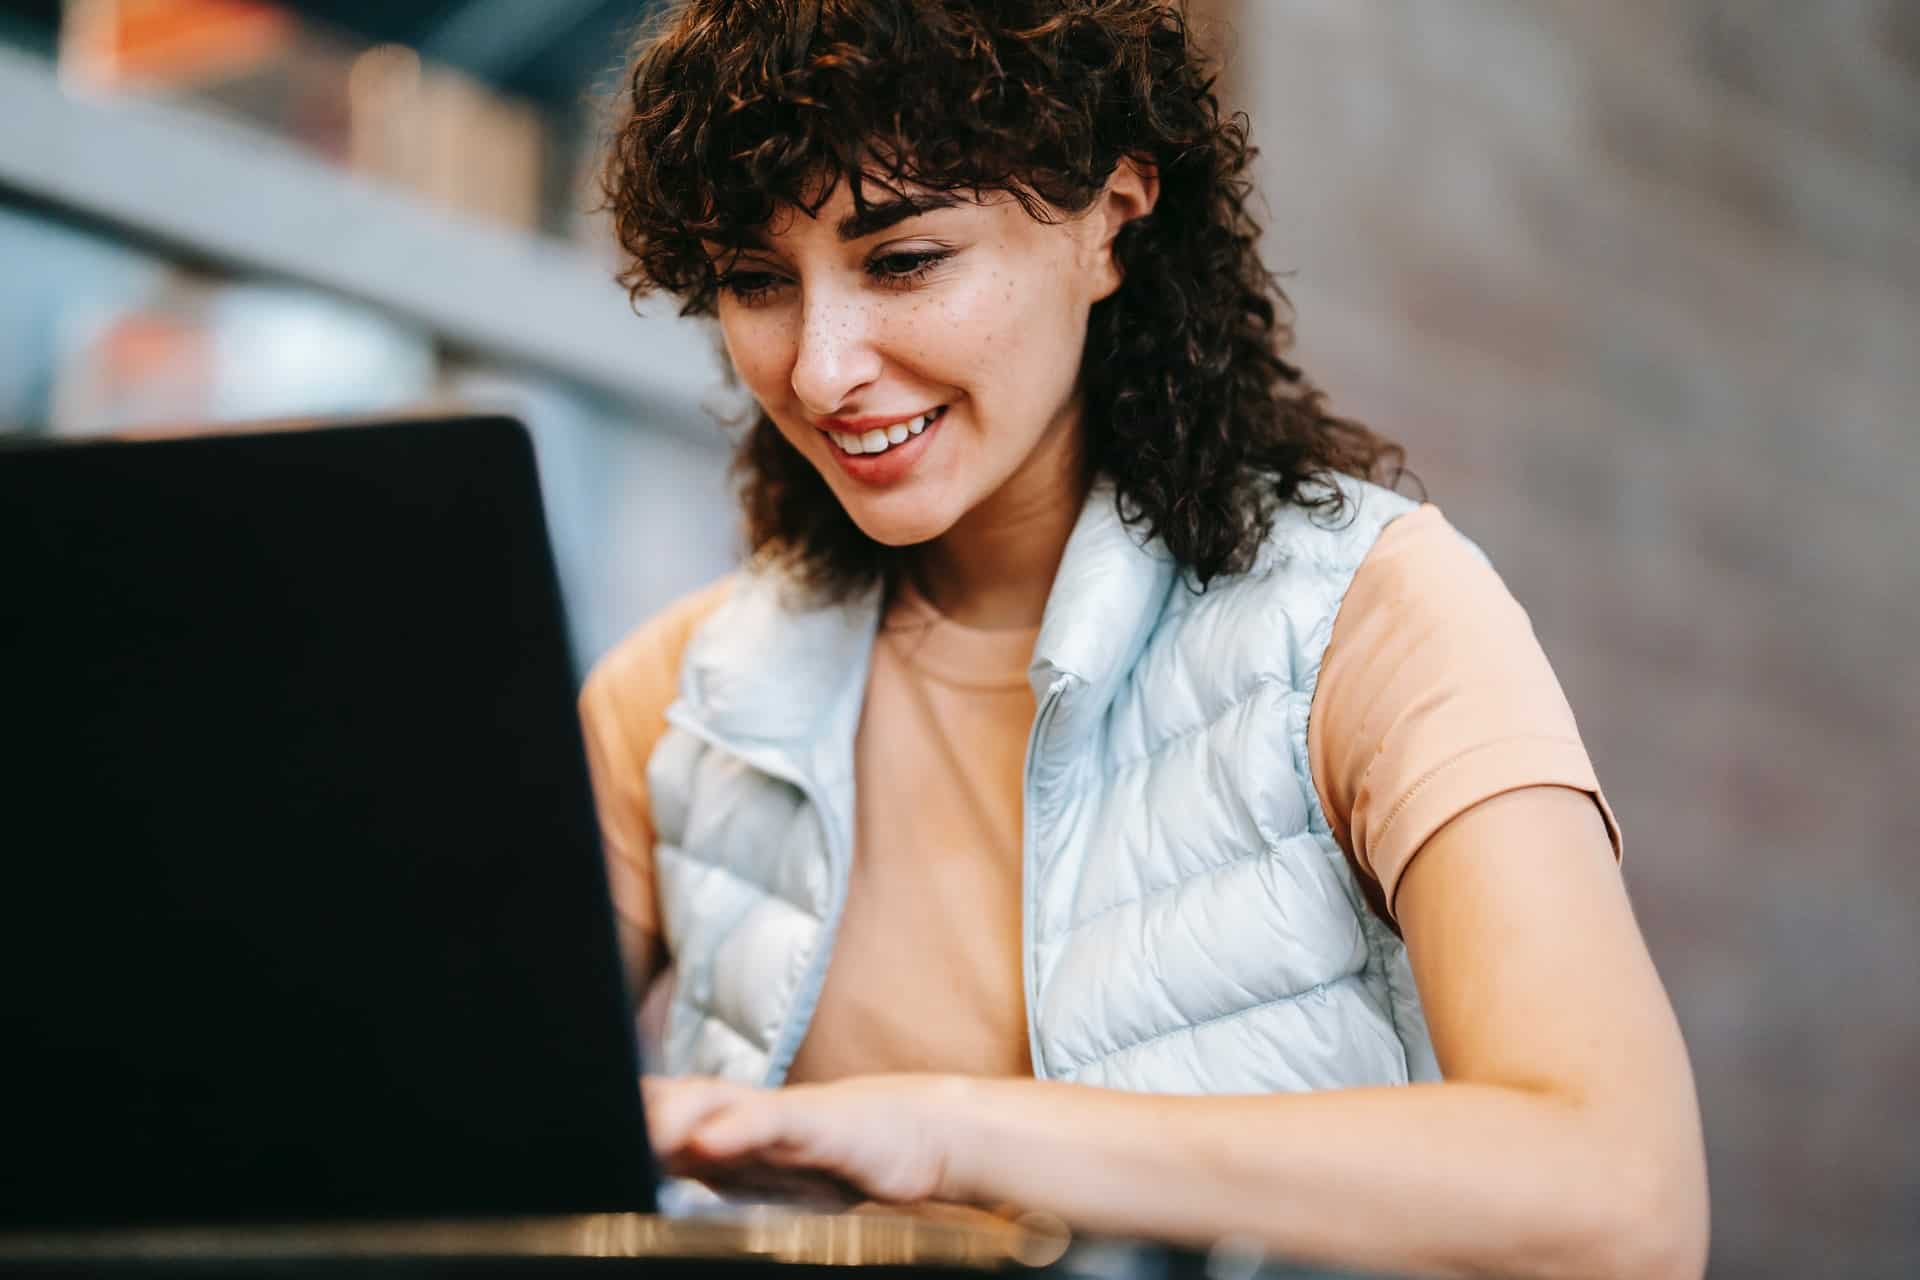 Girl smiling at laptop